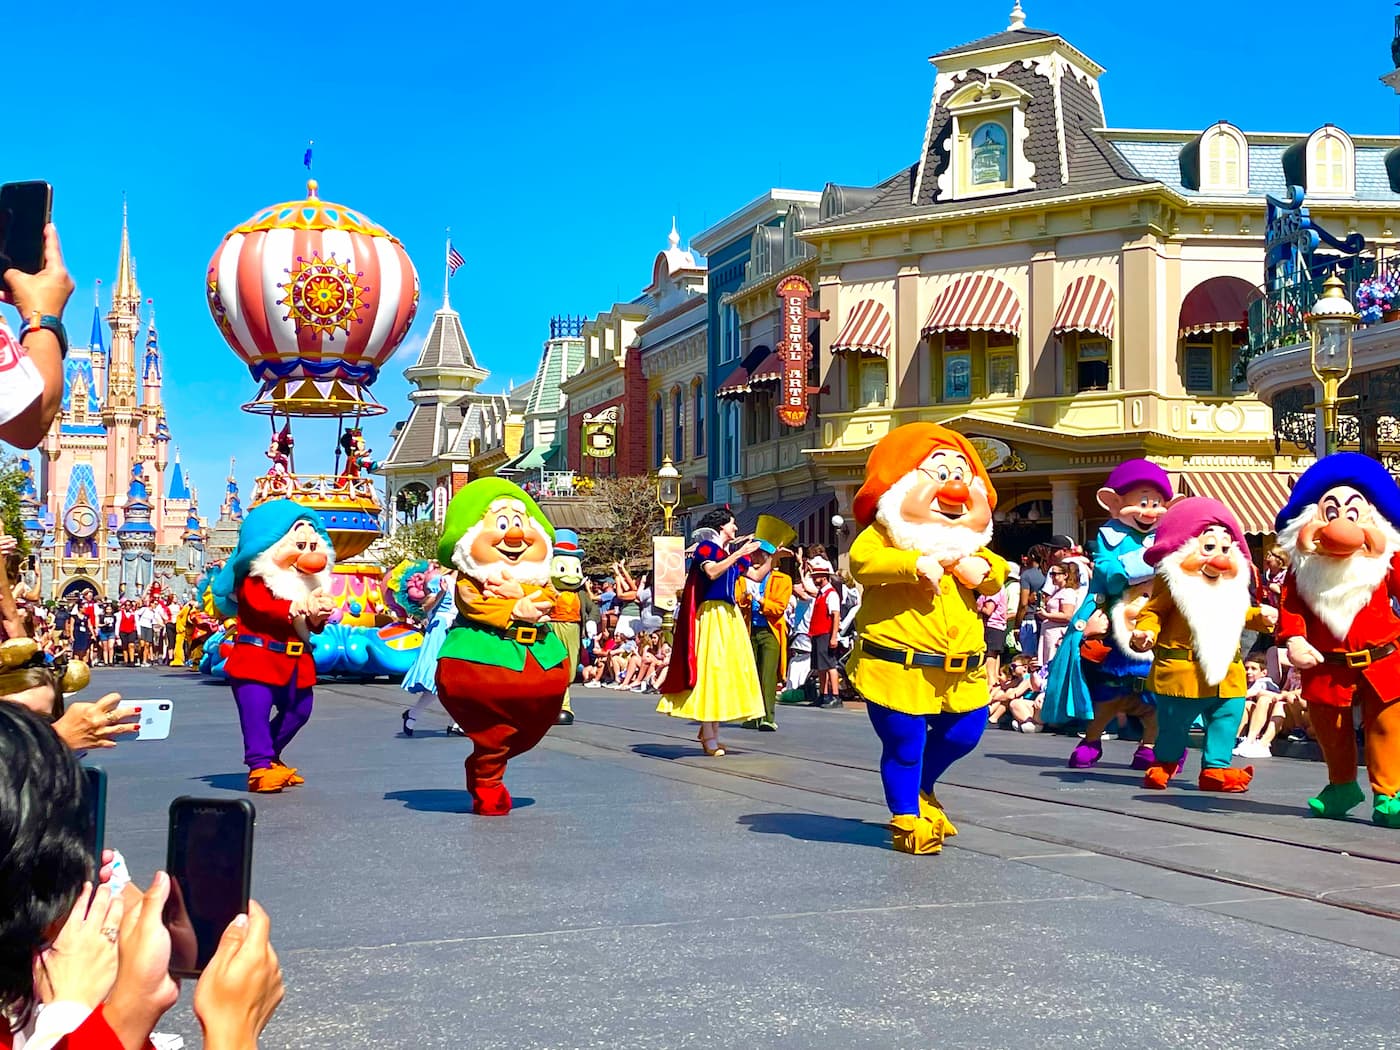 Seven dwarfs in parade at Disney.